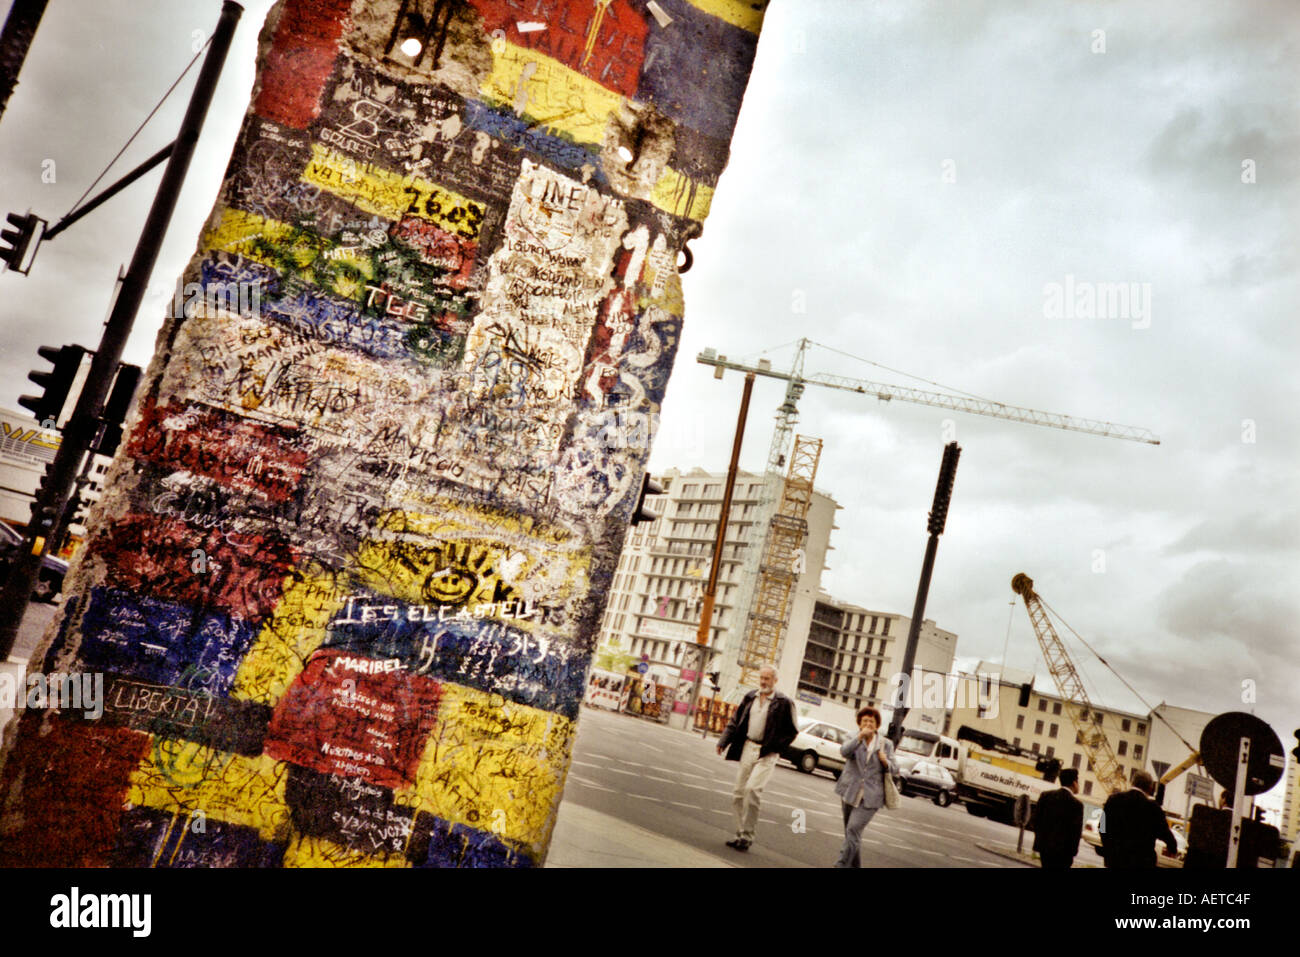 Stück der Berliner Mauer Potsdamer Platz, Berlin, Deutschland - während der Bauarbeiten noch nicht abgeschlossen - Aufnahme auf einer Lomo-Kamera Stockfoto